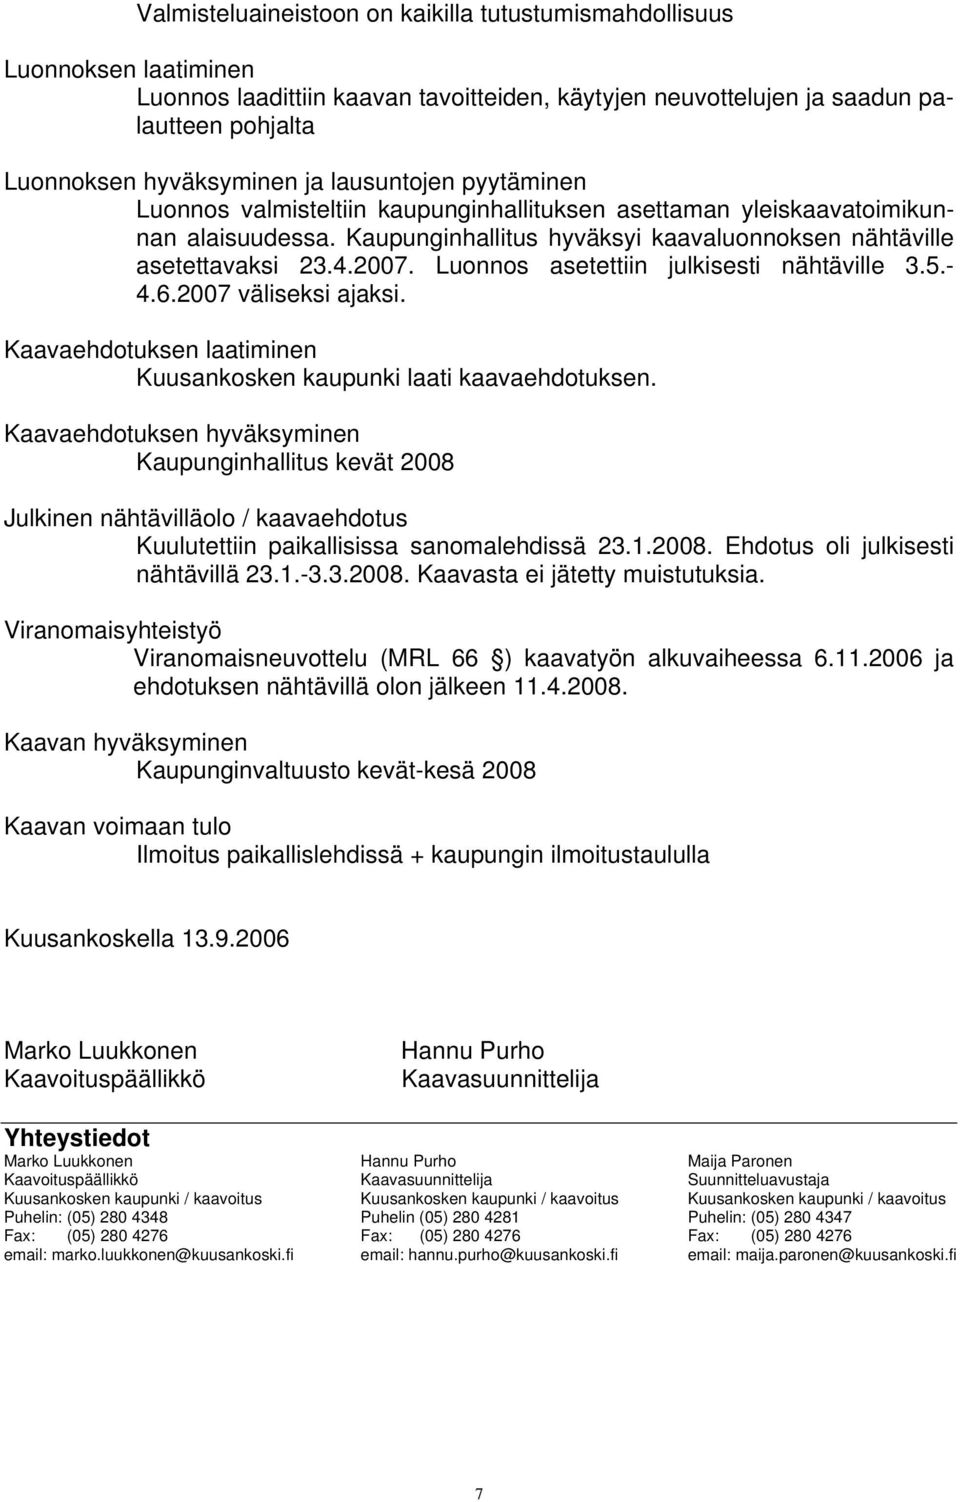 Luonnos asetettiin julkisesti nähtäville 3.5.- 4.6.2007 väliseksi ajaksi. Kaavaehdotuksen laatiminen Kuusankosken kaupunki laati kaavaehdotuksen.